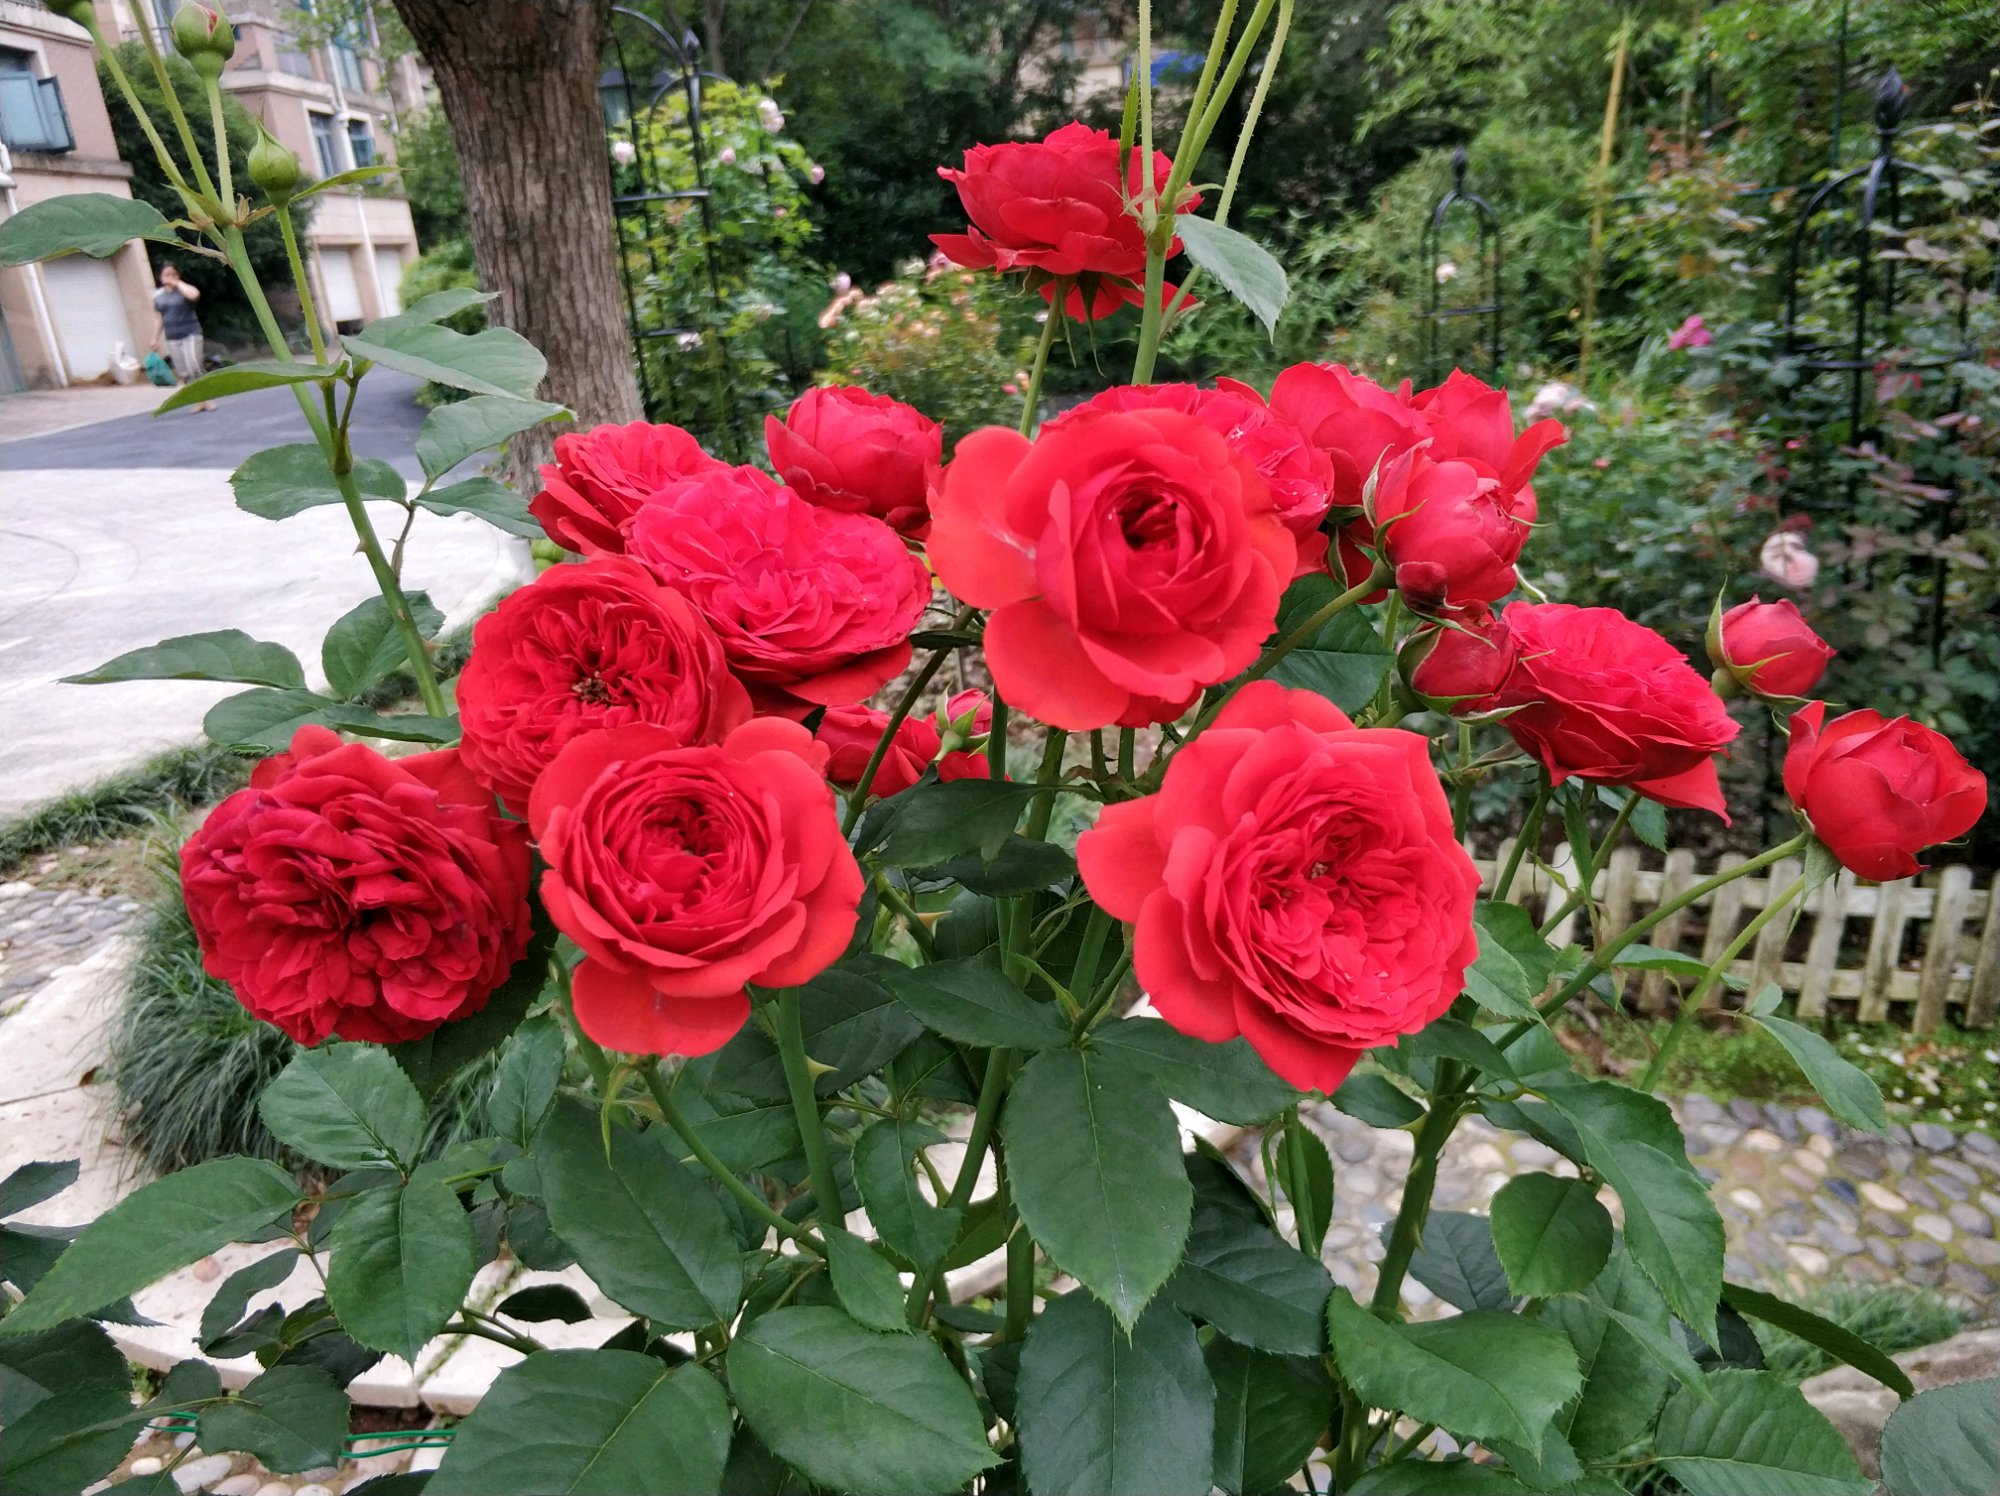 阳台养花,养棵"红苹果"—大红色花朵,美丽又喜庆!